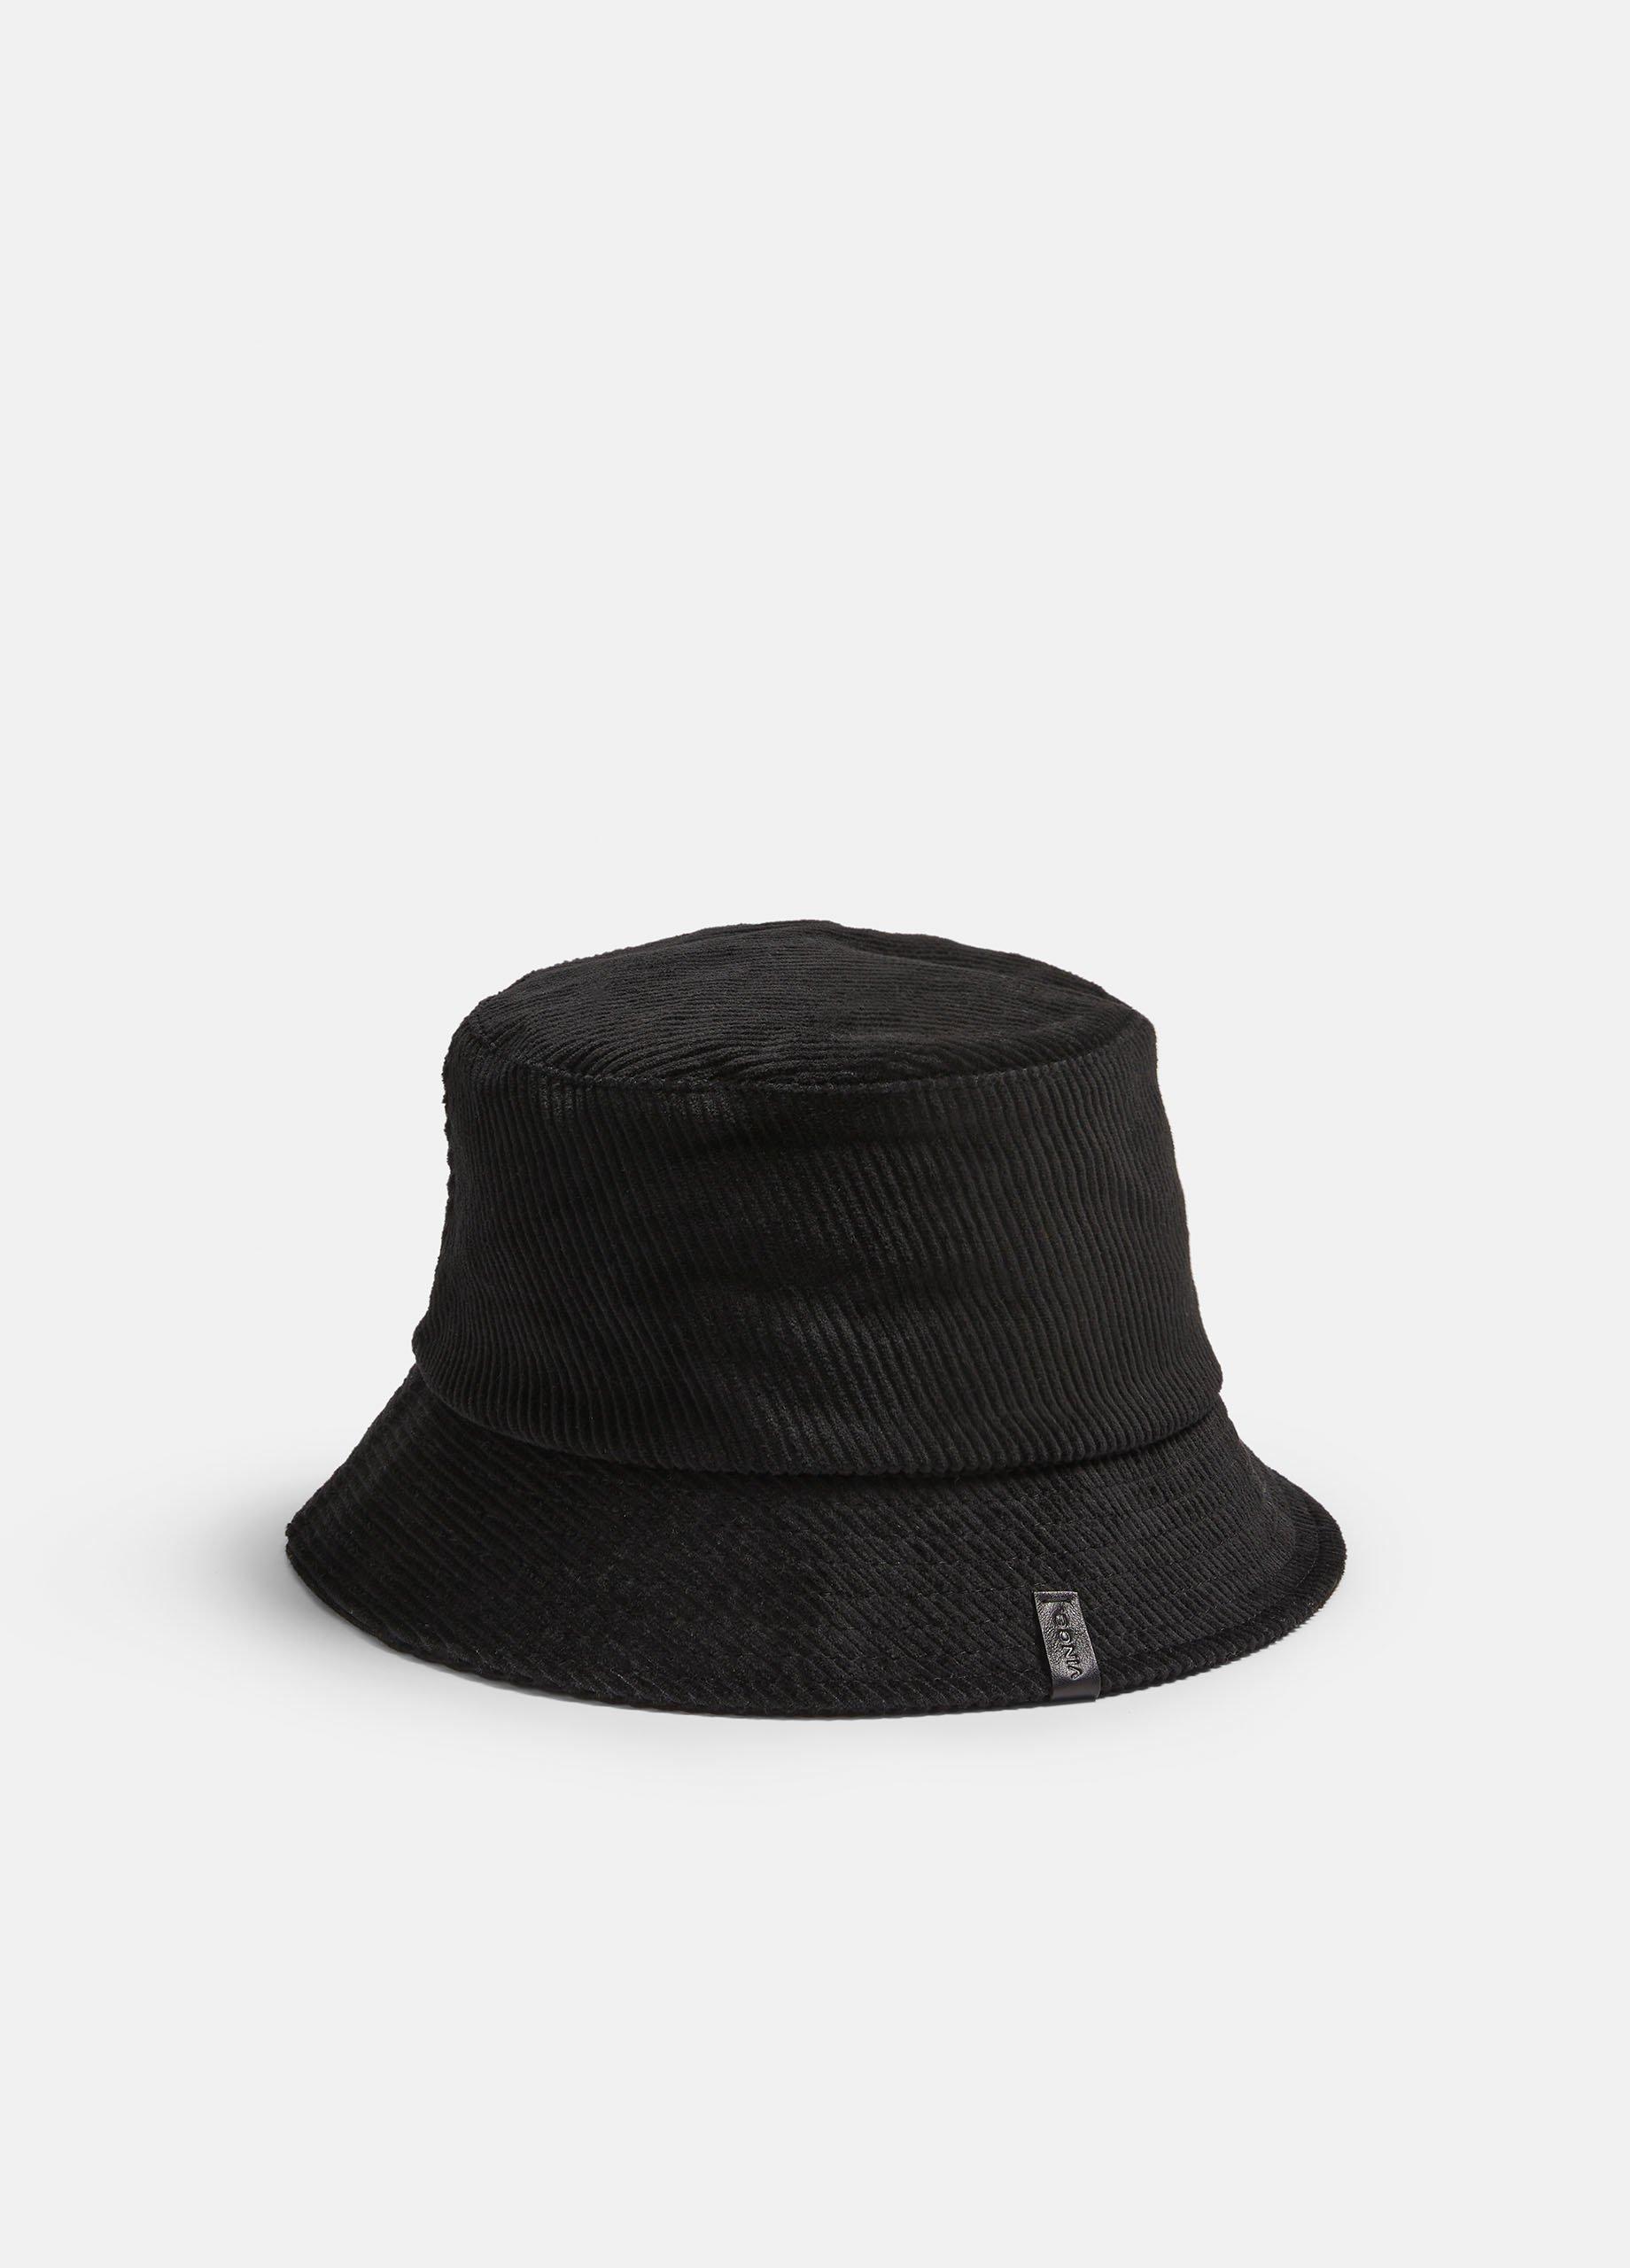 Corduroy Bucket Hat, Black, Size L/XL Vince